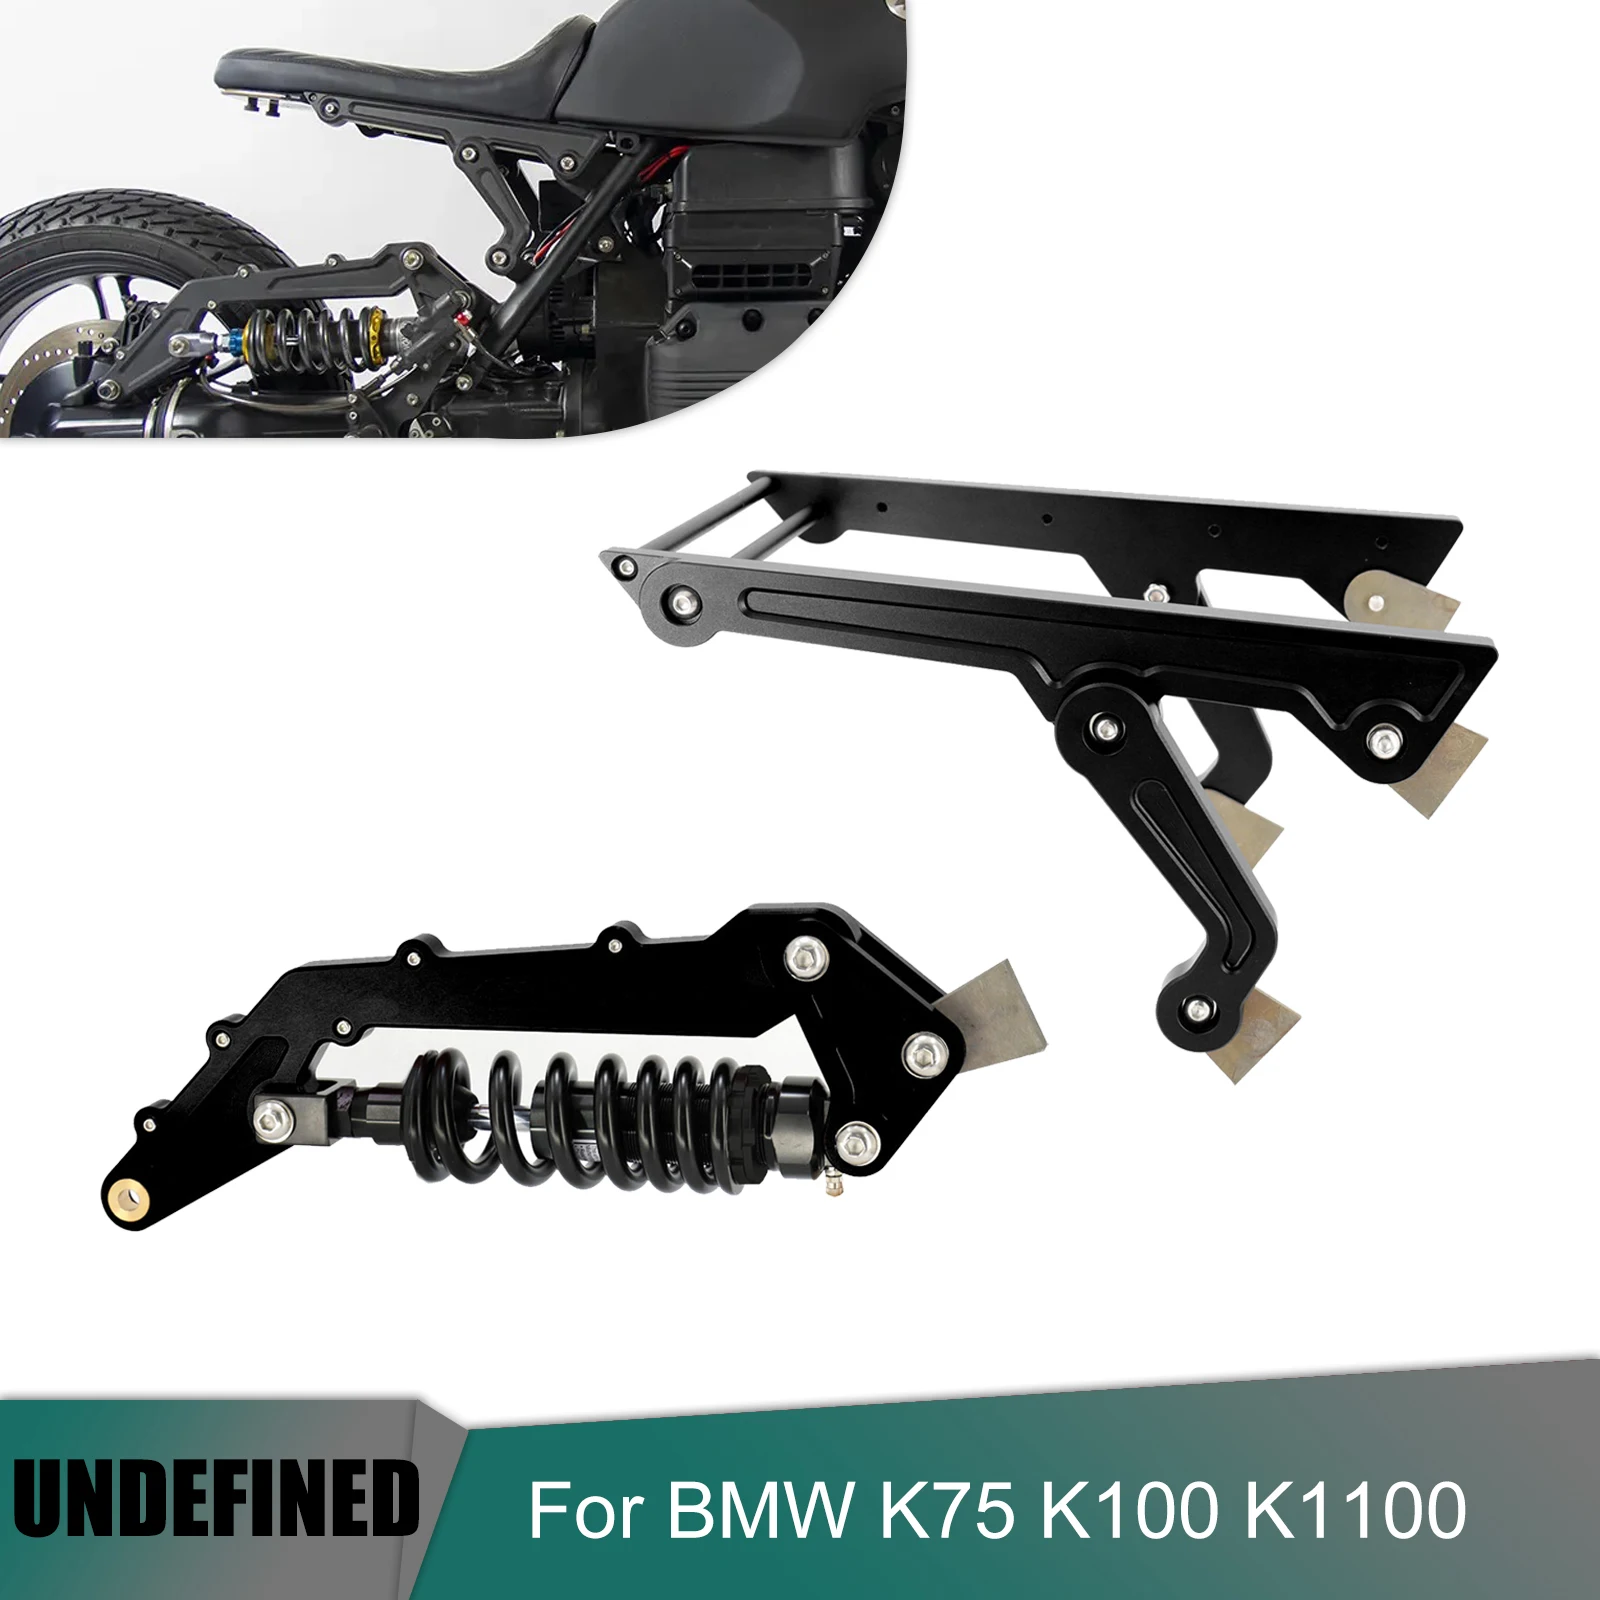 

Rear Shock Absorber For BMW K75 K100 K1100 Pro-link Kit Motorcycle Subframe Suspension Seat Bracket Modified Adjusted Damping